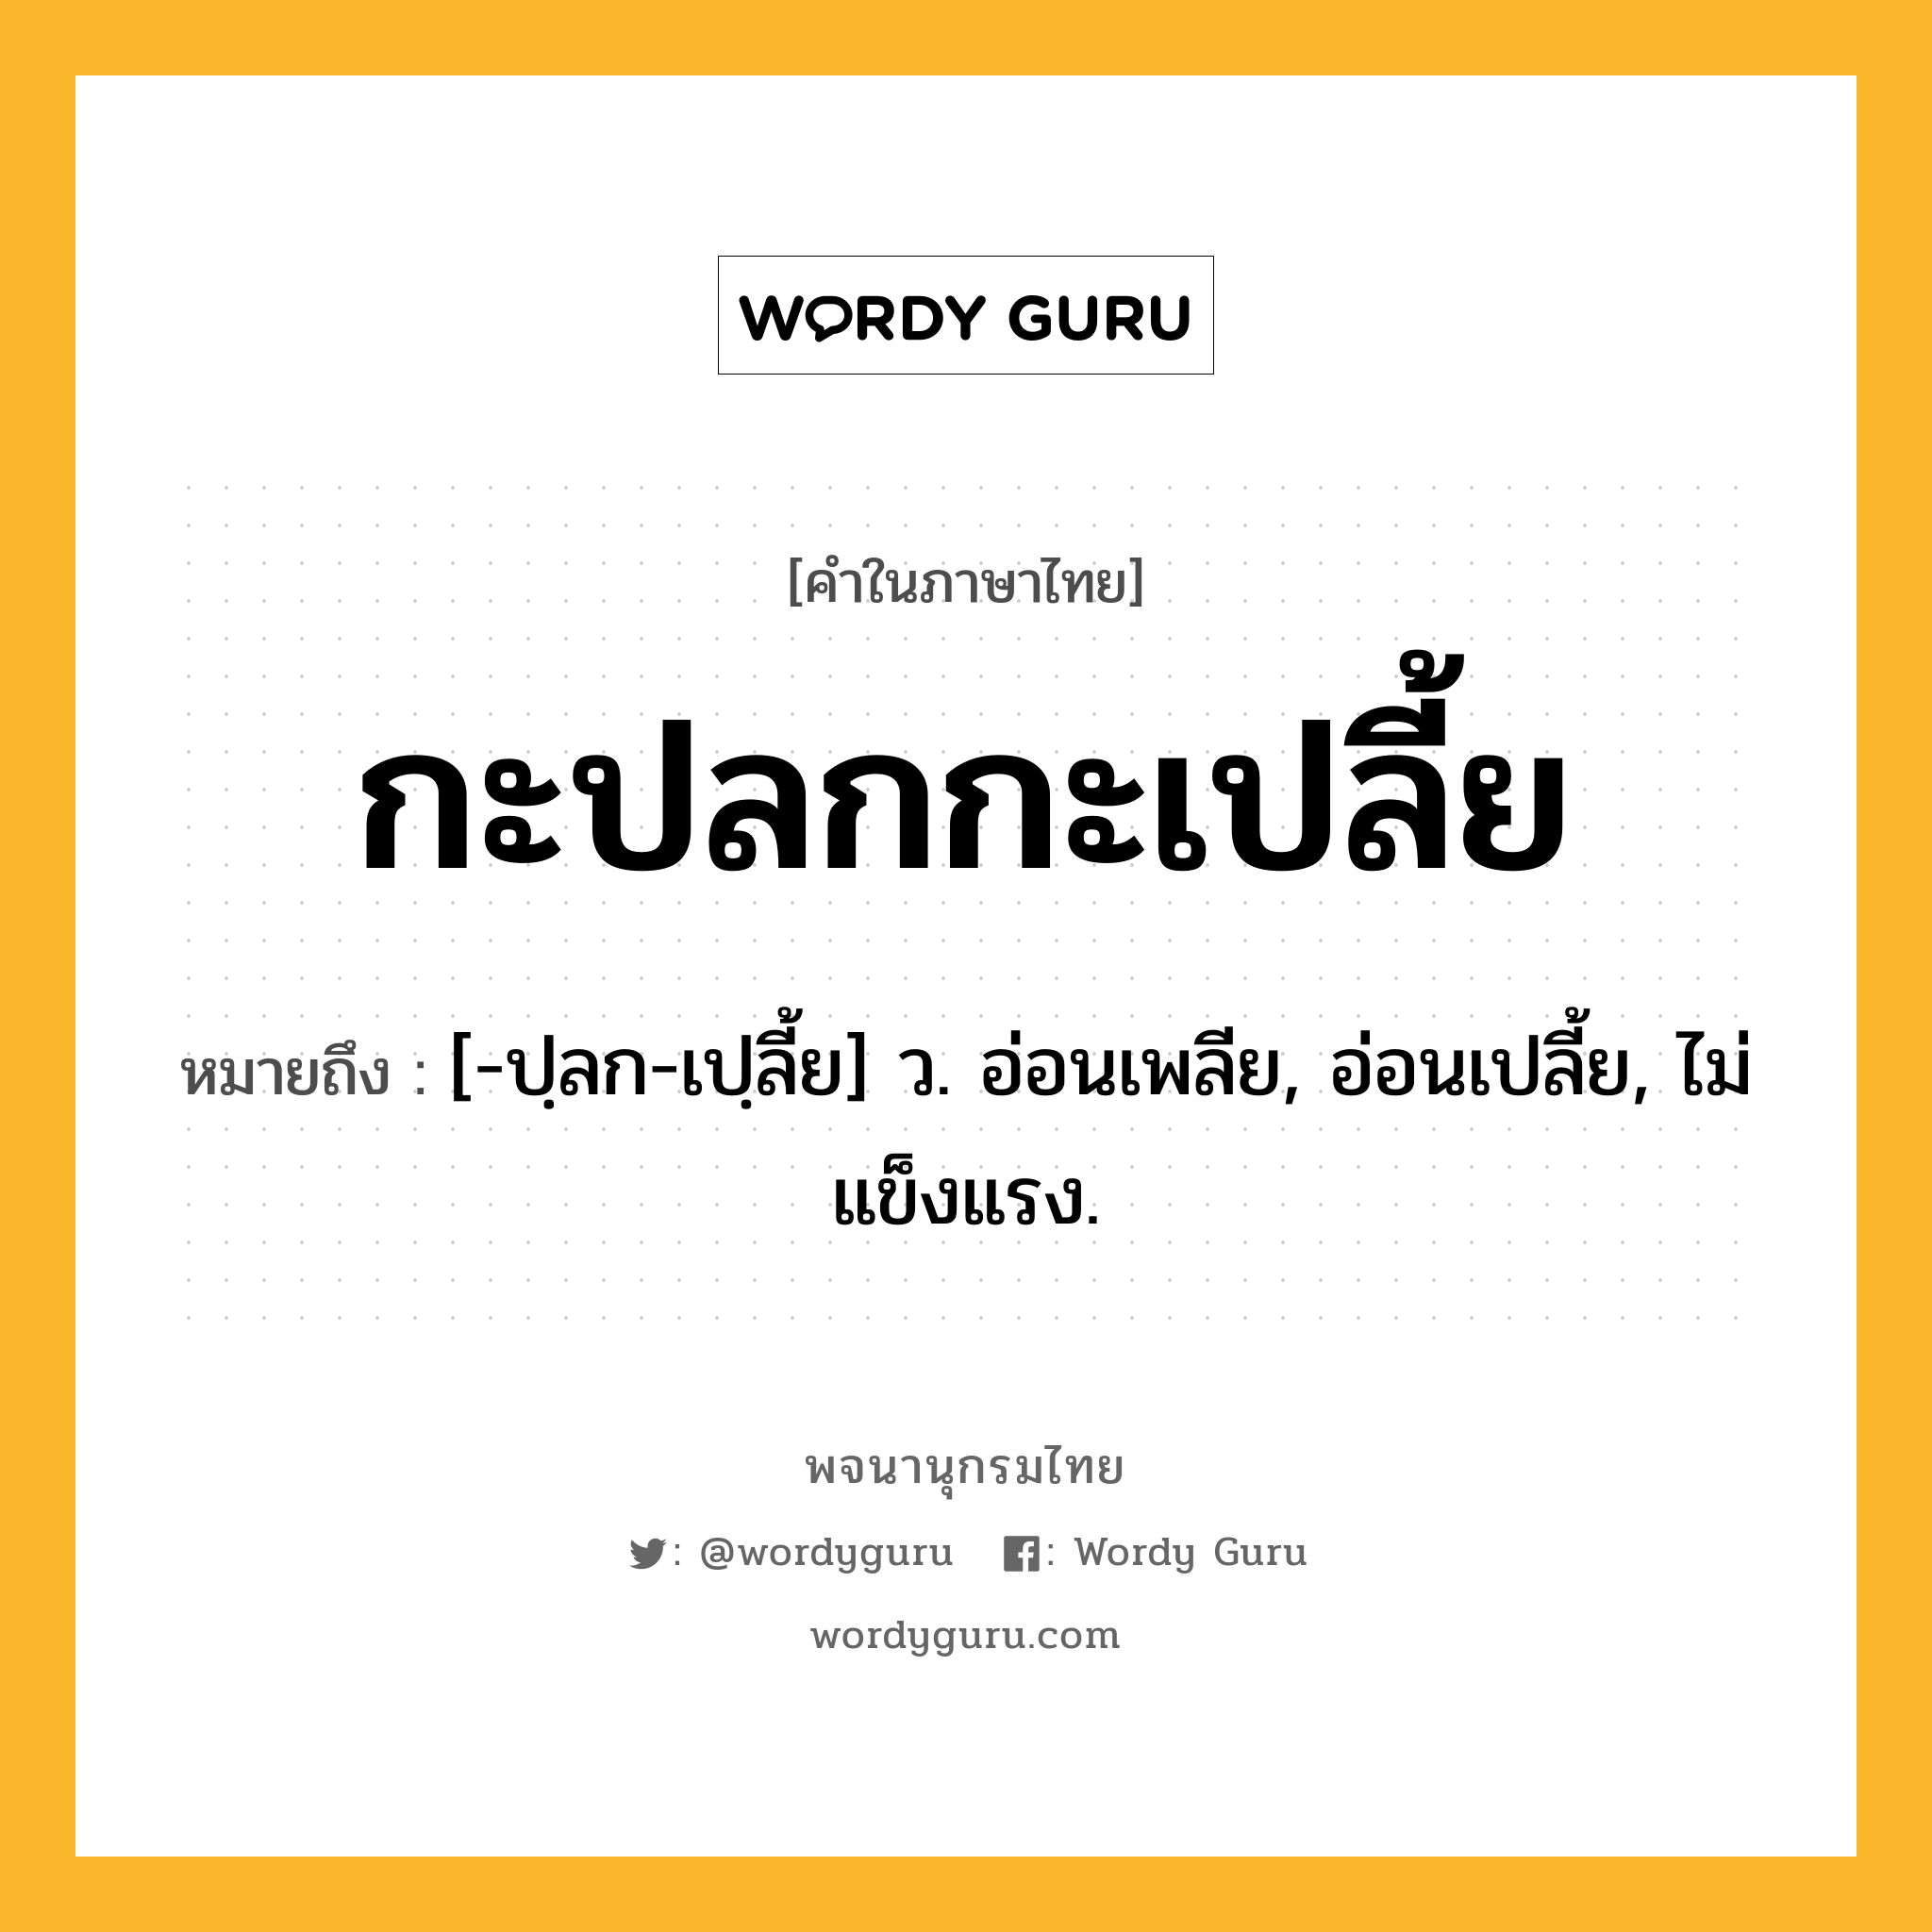 กะปลกกะเปลี้ย หมายถึงอะไร?, คำในภาษาไทย กะปลกกะเปลี้ย หมายถึง [-ปฺลก-เปฺลี้ย] ว. อ่อนเพลีย, อ่อนเปลี้ย, ไม่แข็งแรง.